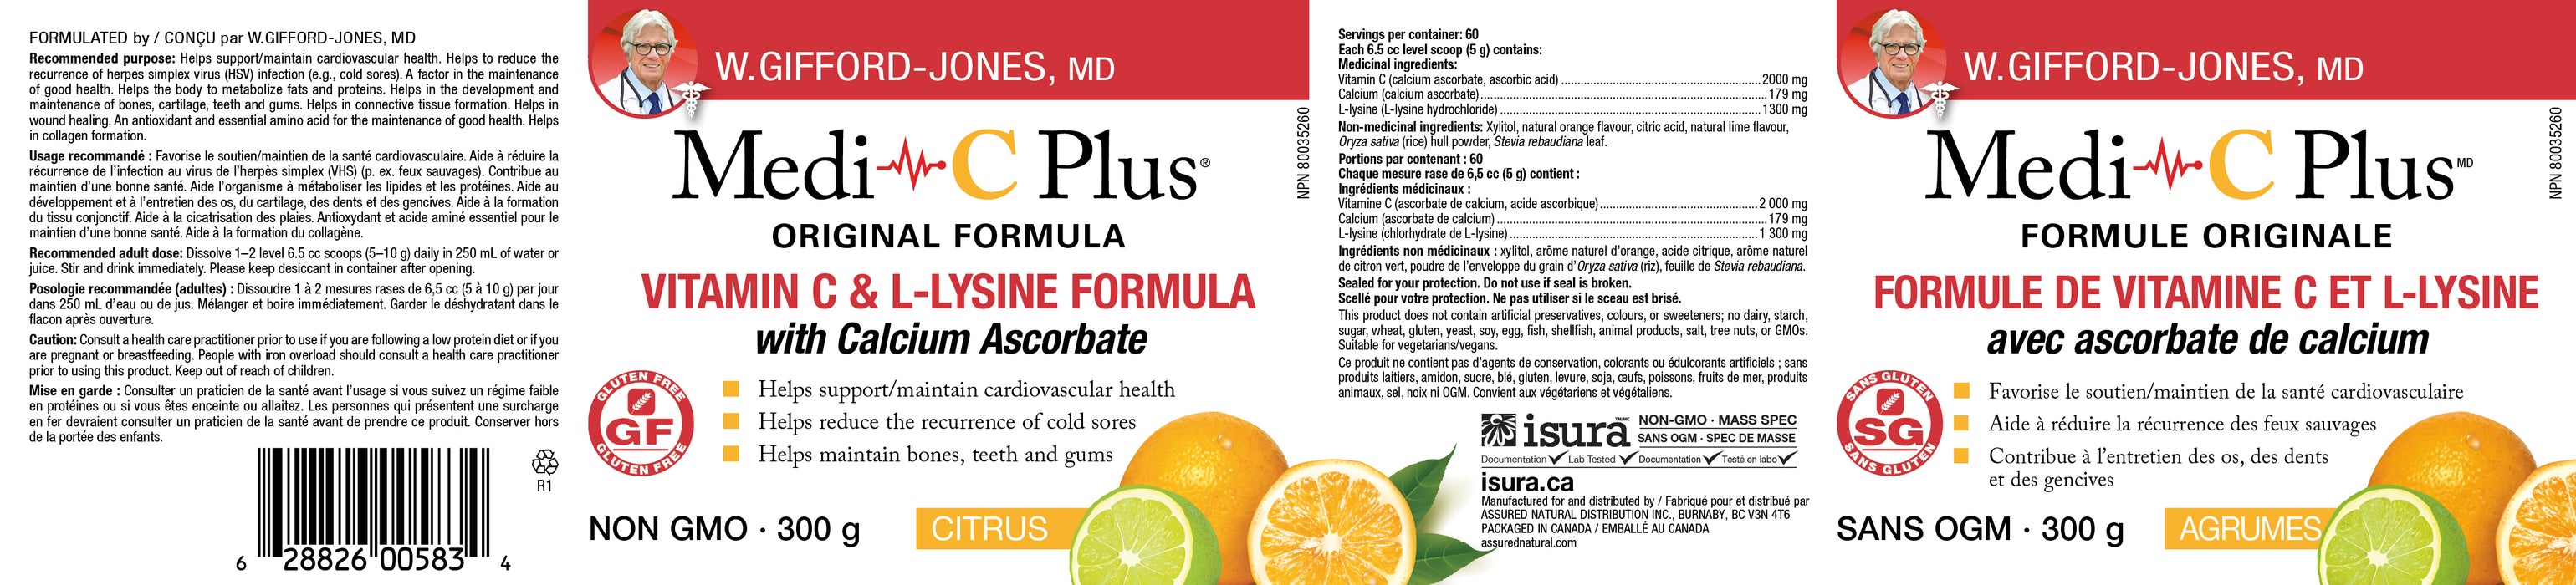 Dr. W. Gifford-Jones Medi C Plus (Calcium) - Citrus 300g